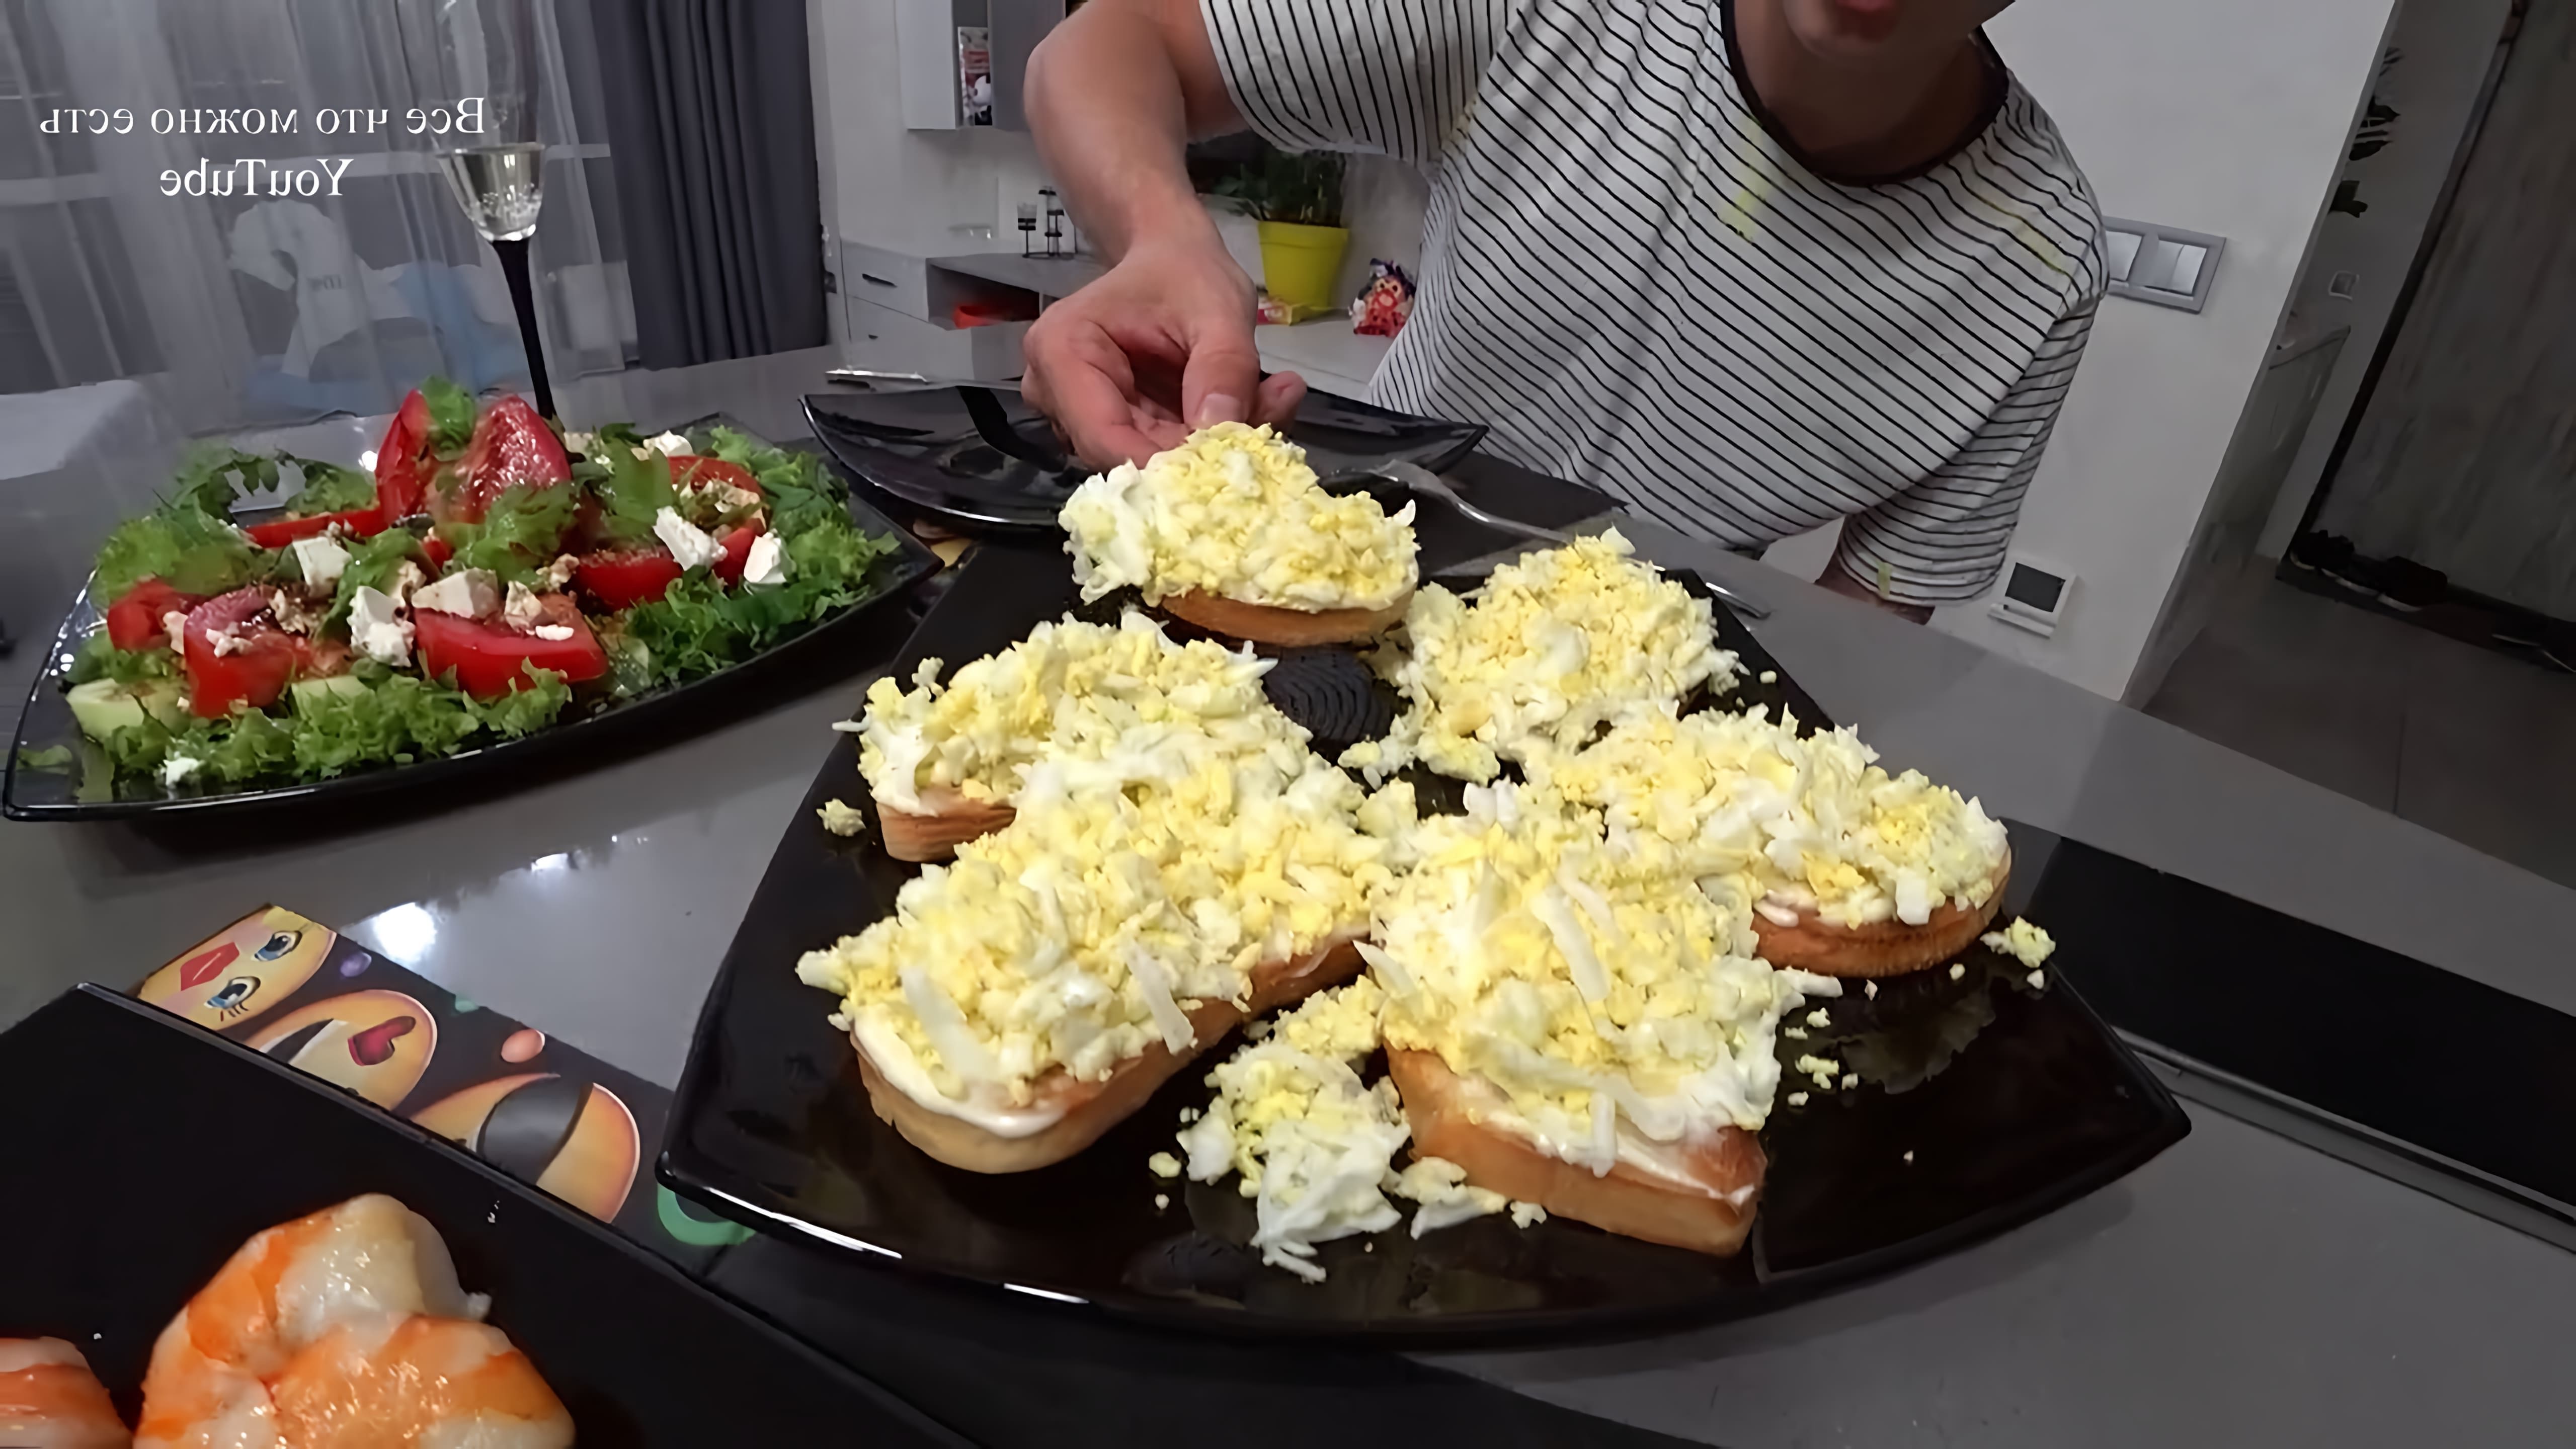 В этом видео демонстрируется рецепт приготовления гренков с яйцом и майонезом с чесноком